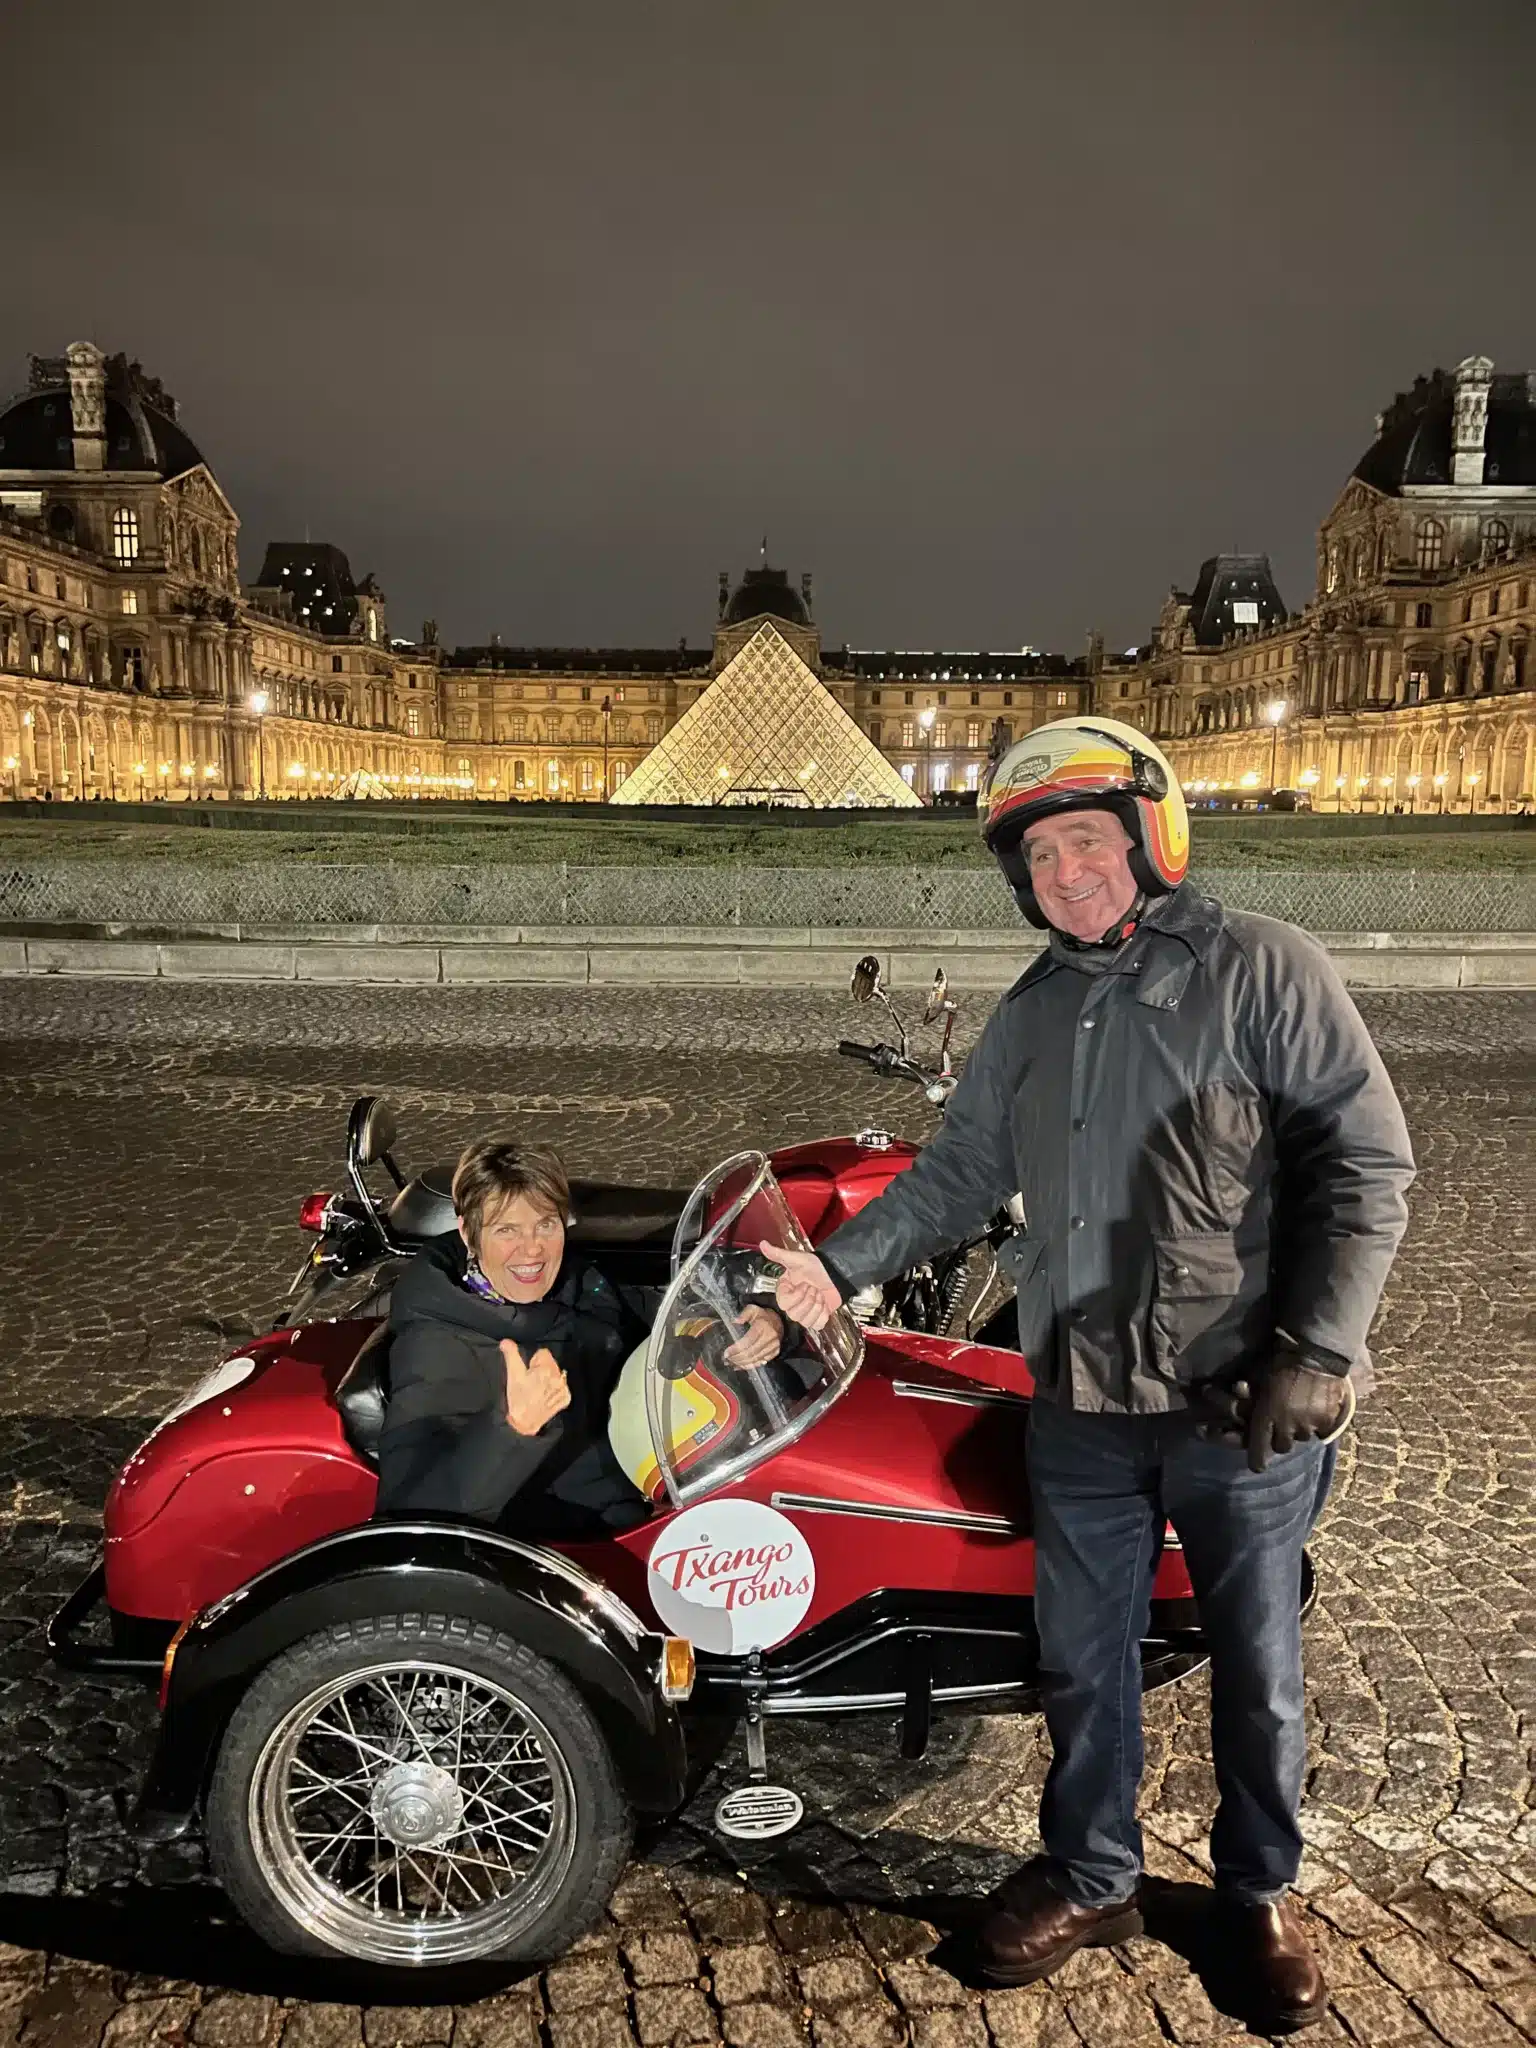 Sidecar Tour of Paris at Night